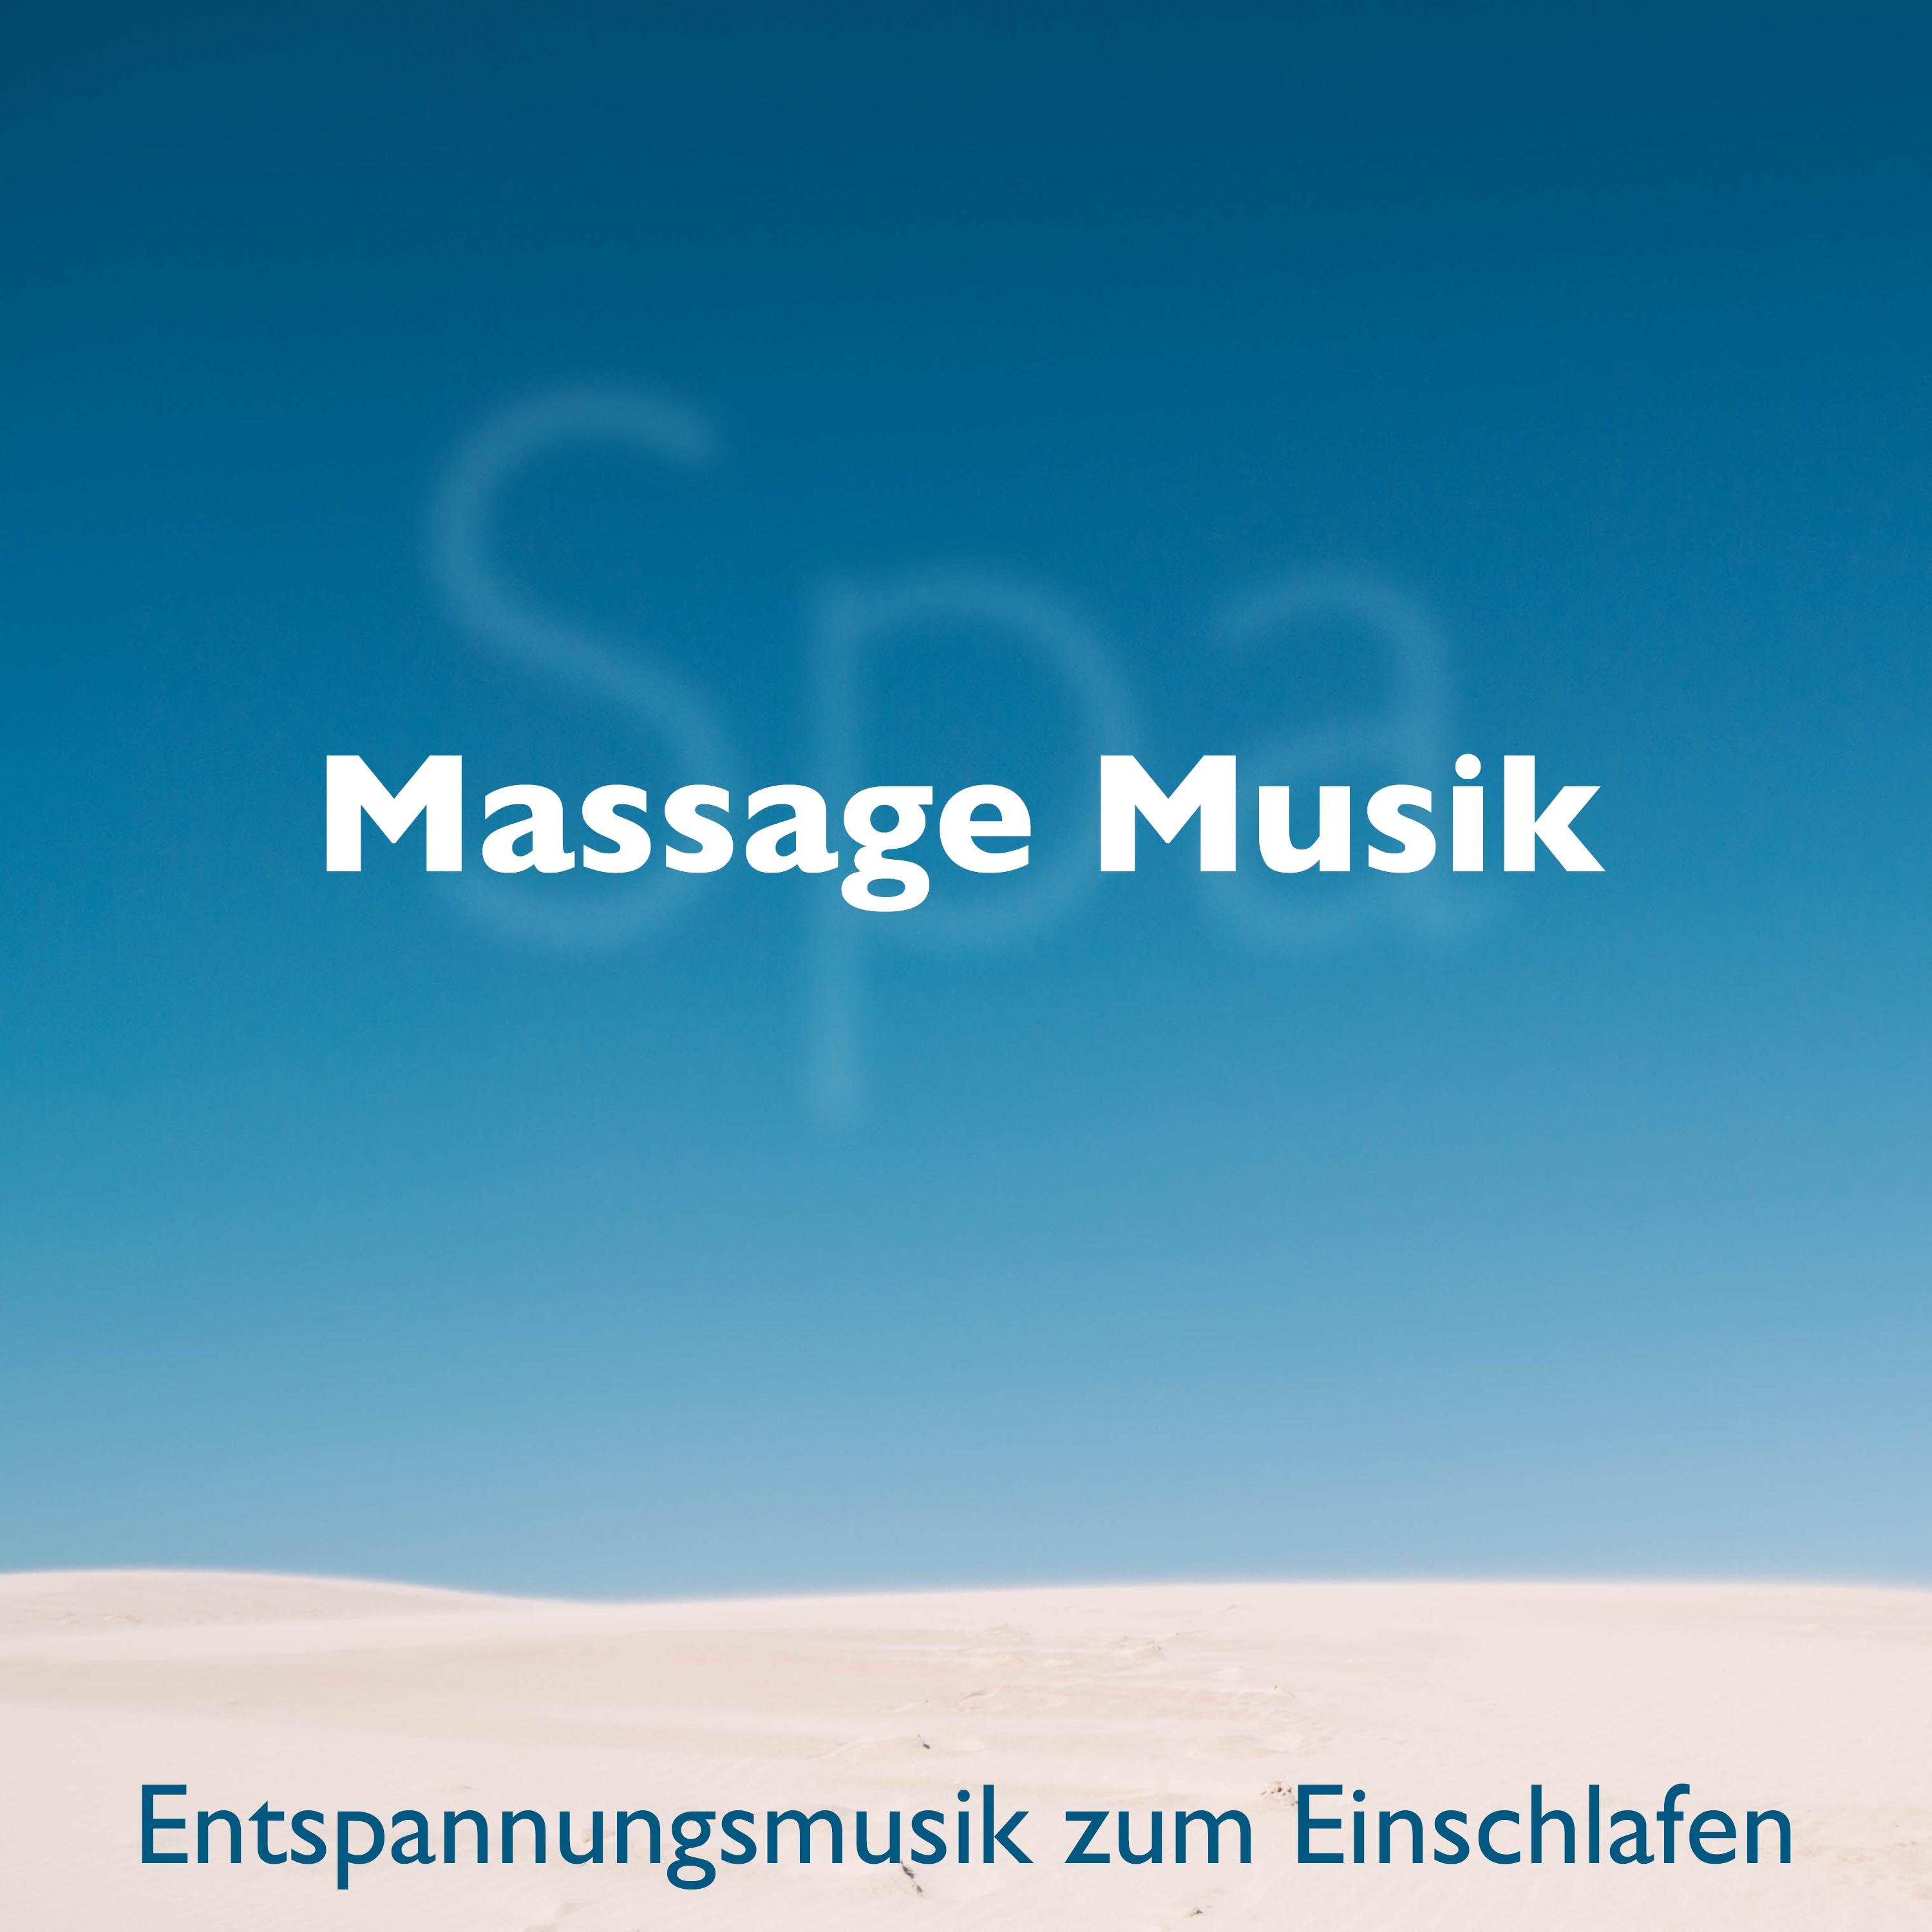 Spa Massage Musik: Entspannungsmusik zum Einschlafen, die besten Kl nge der Natur, Regen, Wind, Meereswellen